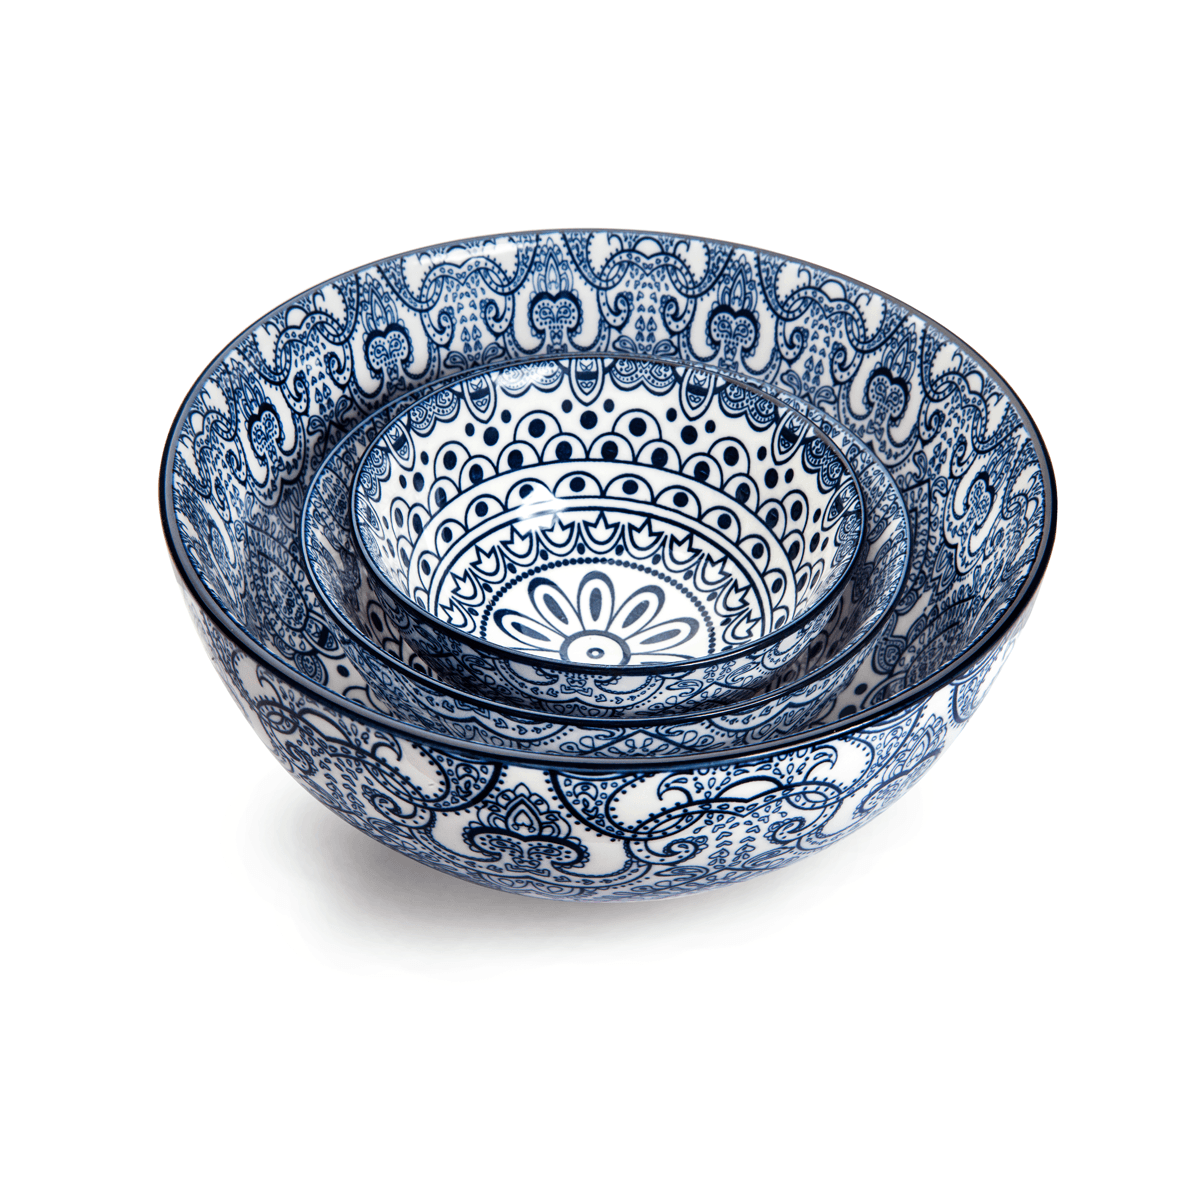 Che Brucia Arabesque Blue Porcelain Bowl 10.1 cm / 4" Blue Ivory Porcelain